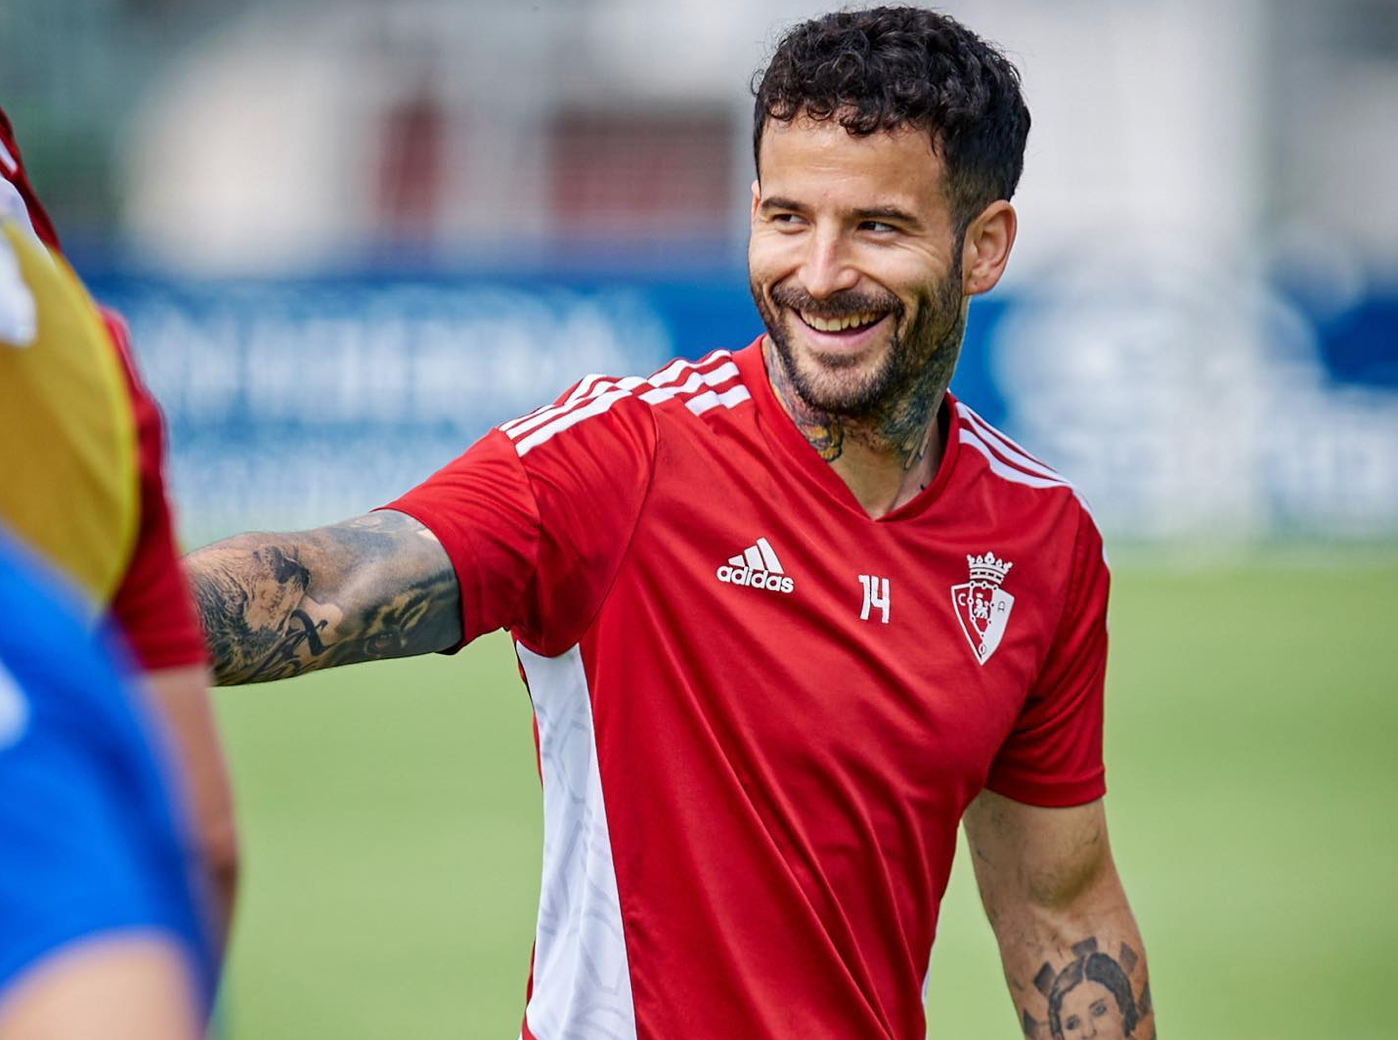 El futbolista español Rubén García se acaba de convertir en nuestro nuevo aliado favorito